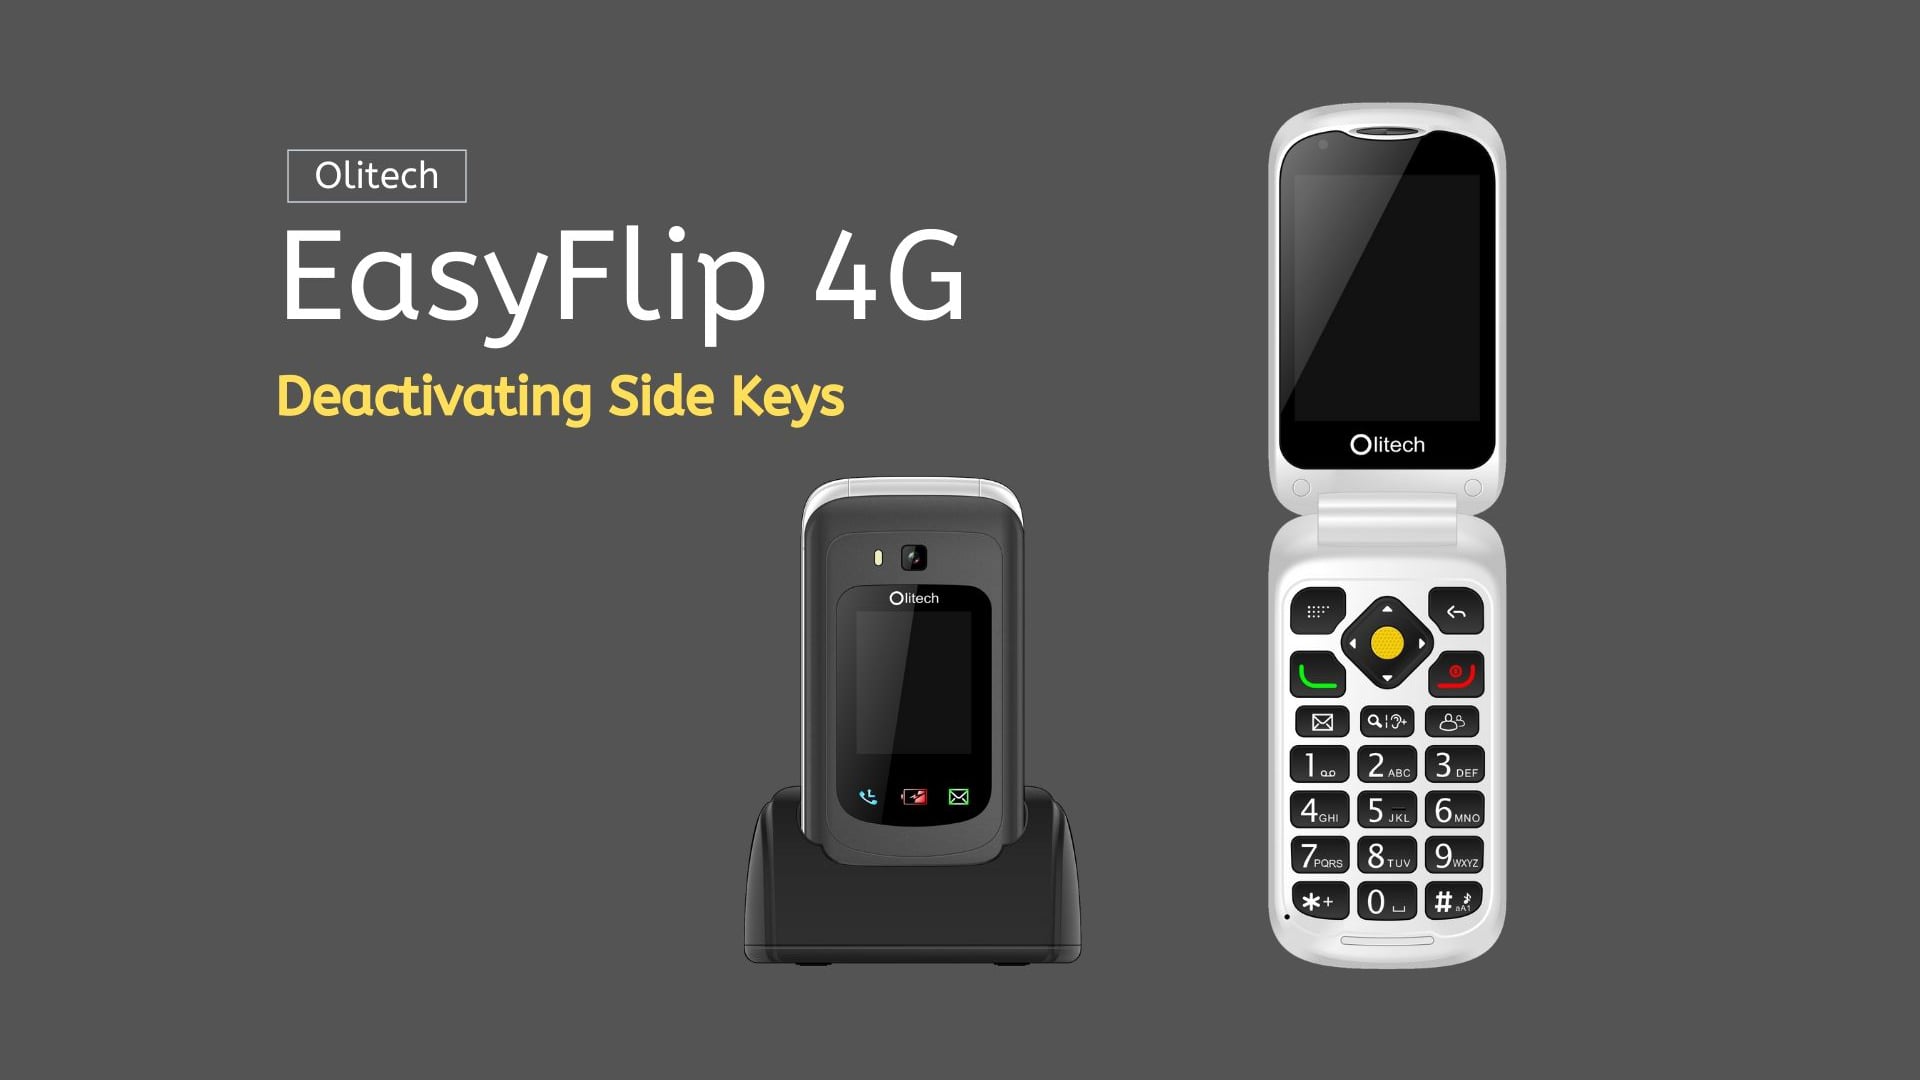 Olitech EasyFlip 4G - Deactivating Side Keys